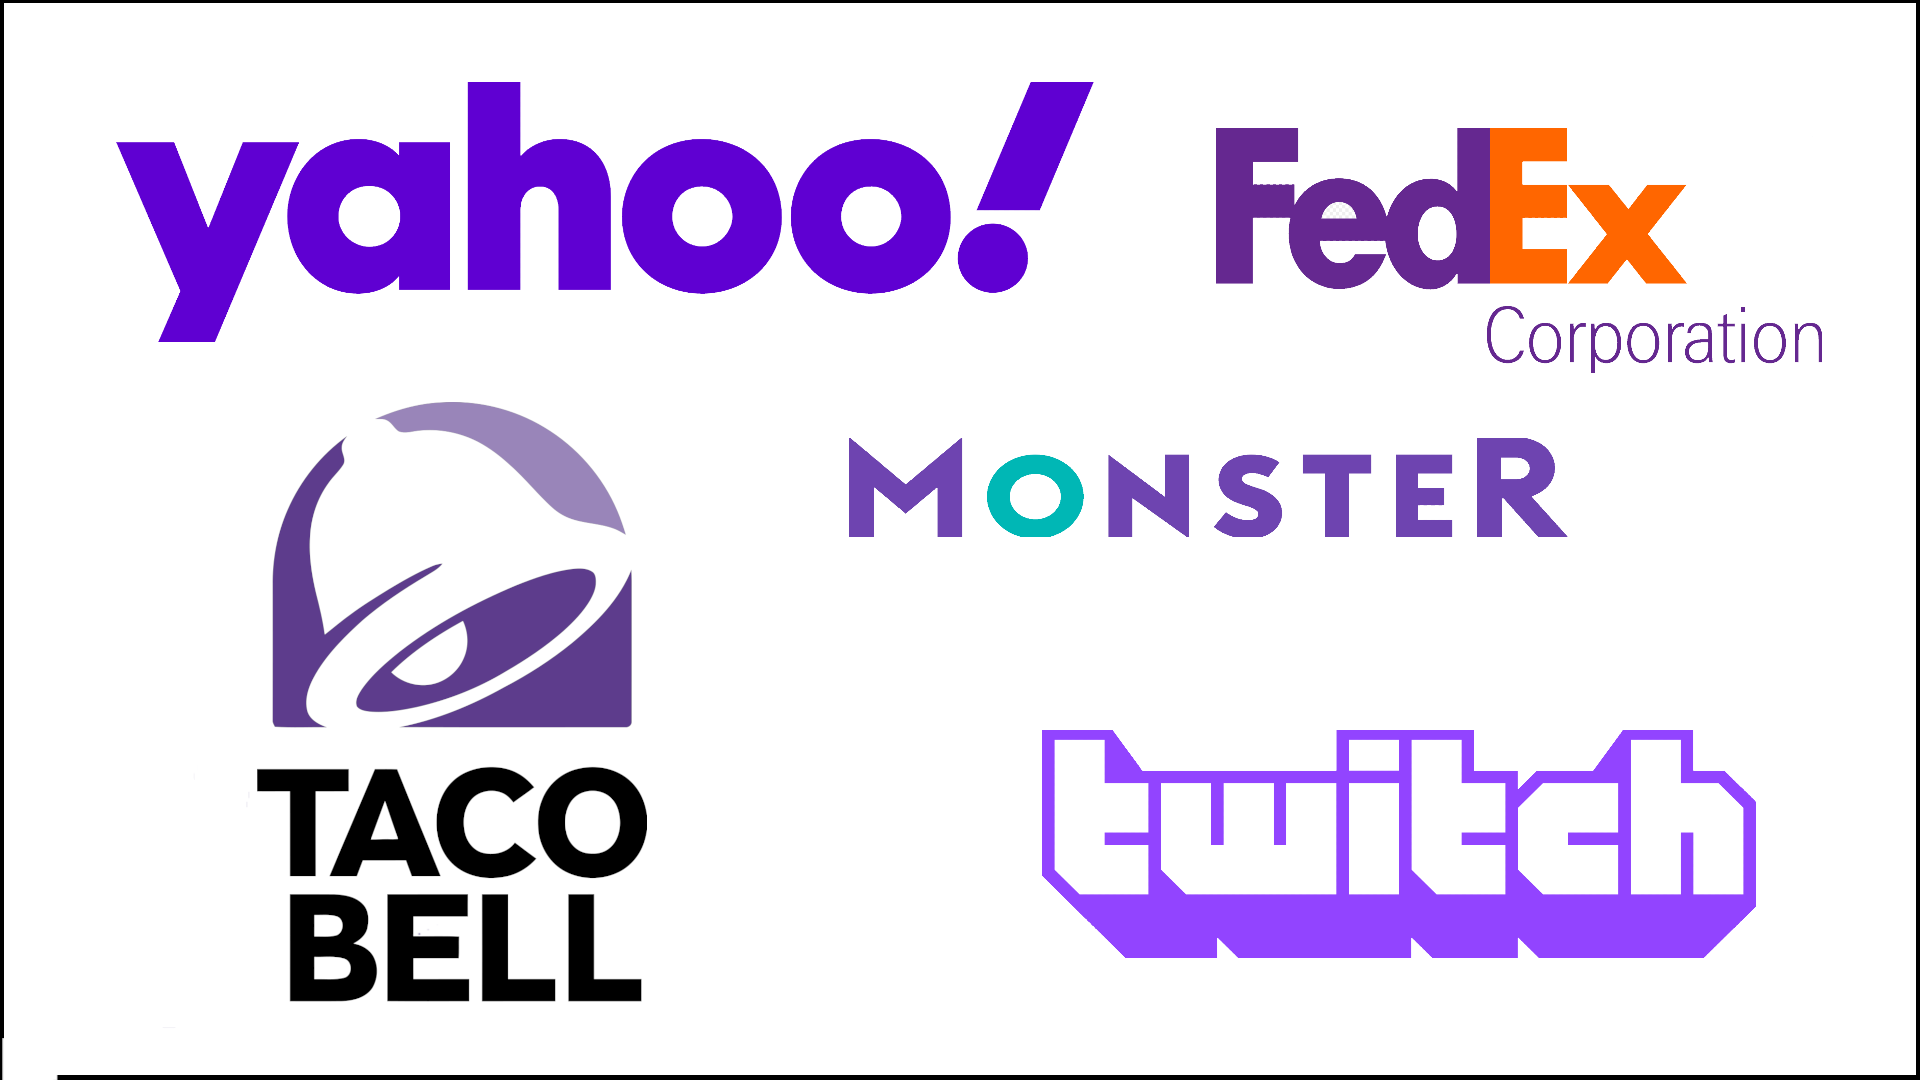 Sampling of purple logos